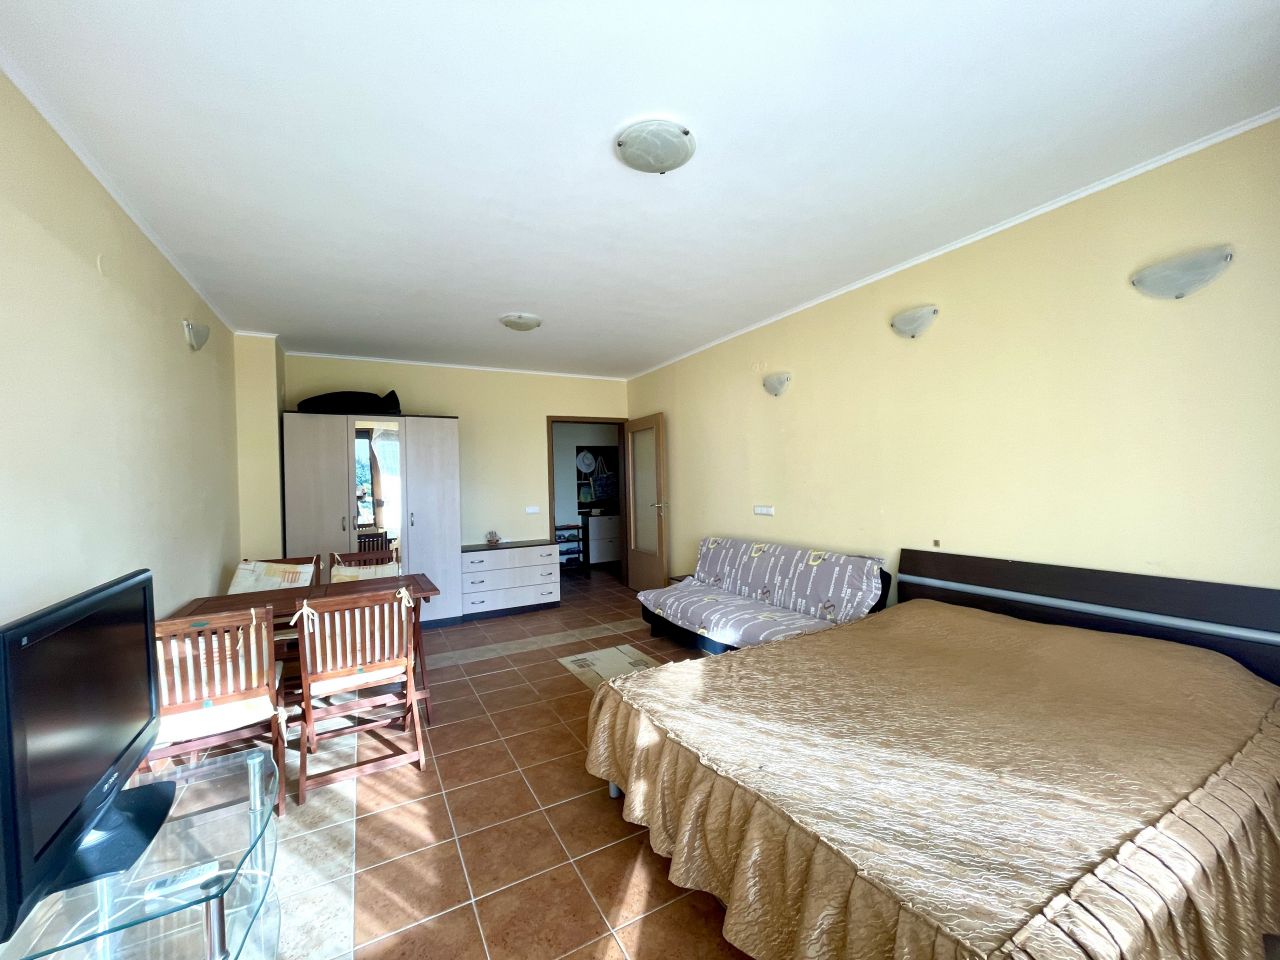 Apartment in Pomorie, Bulgaria, 93 sq.m - picture 1